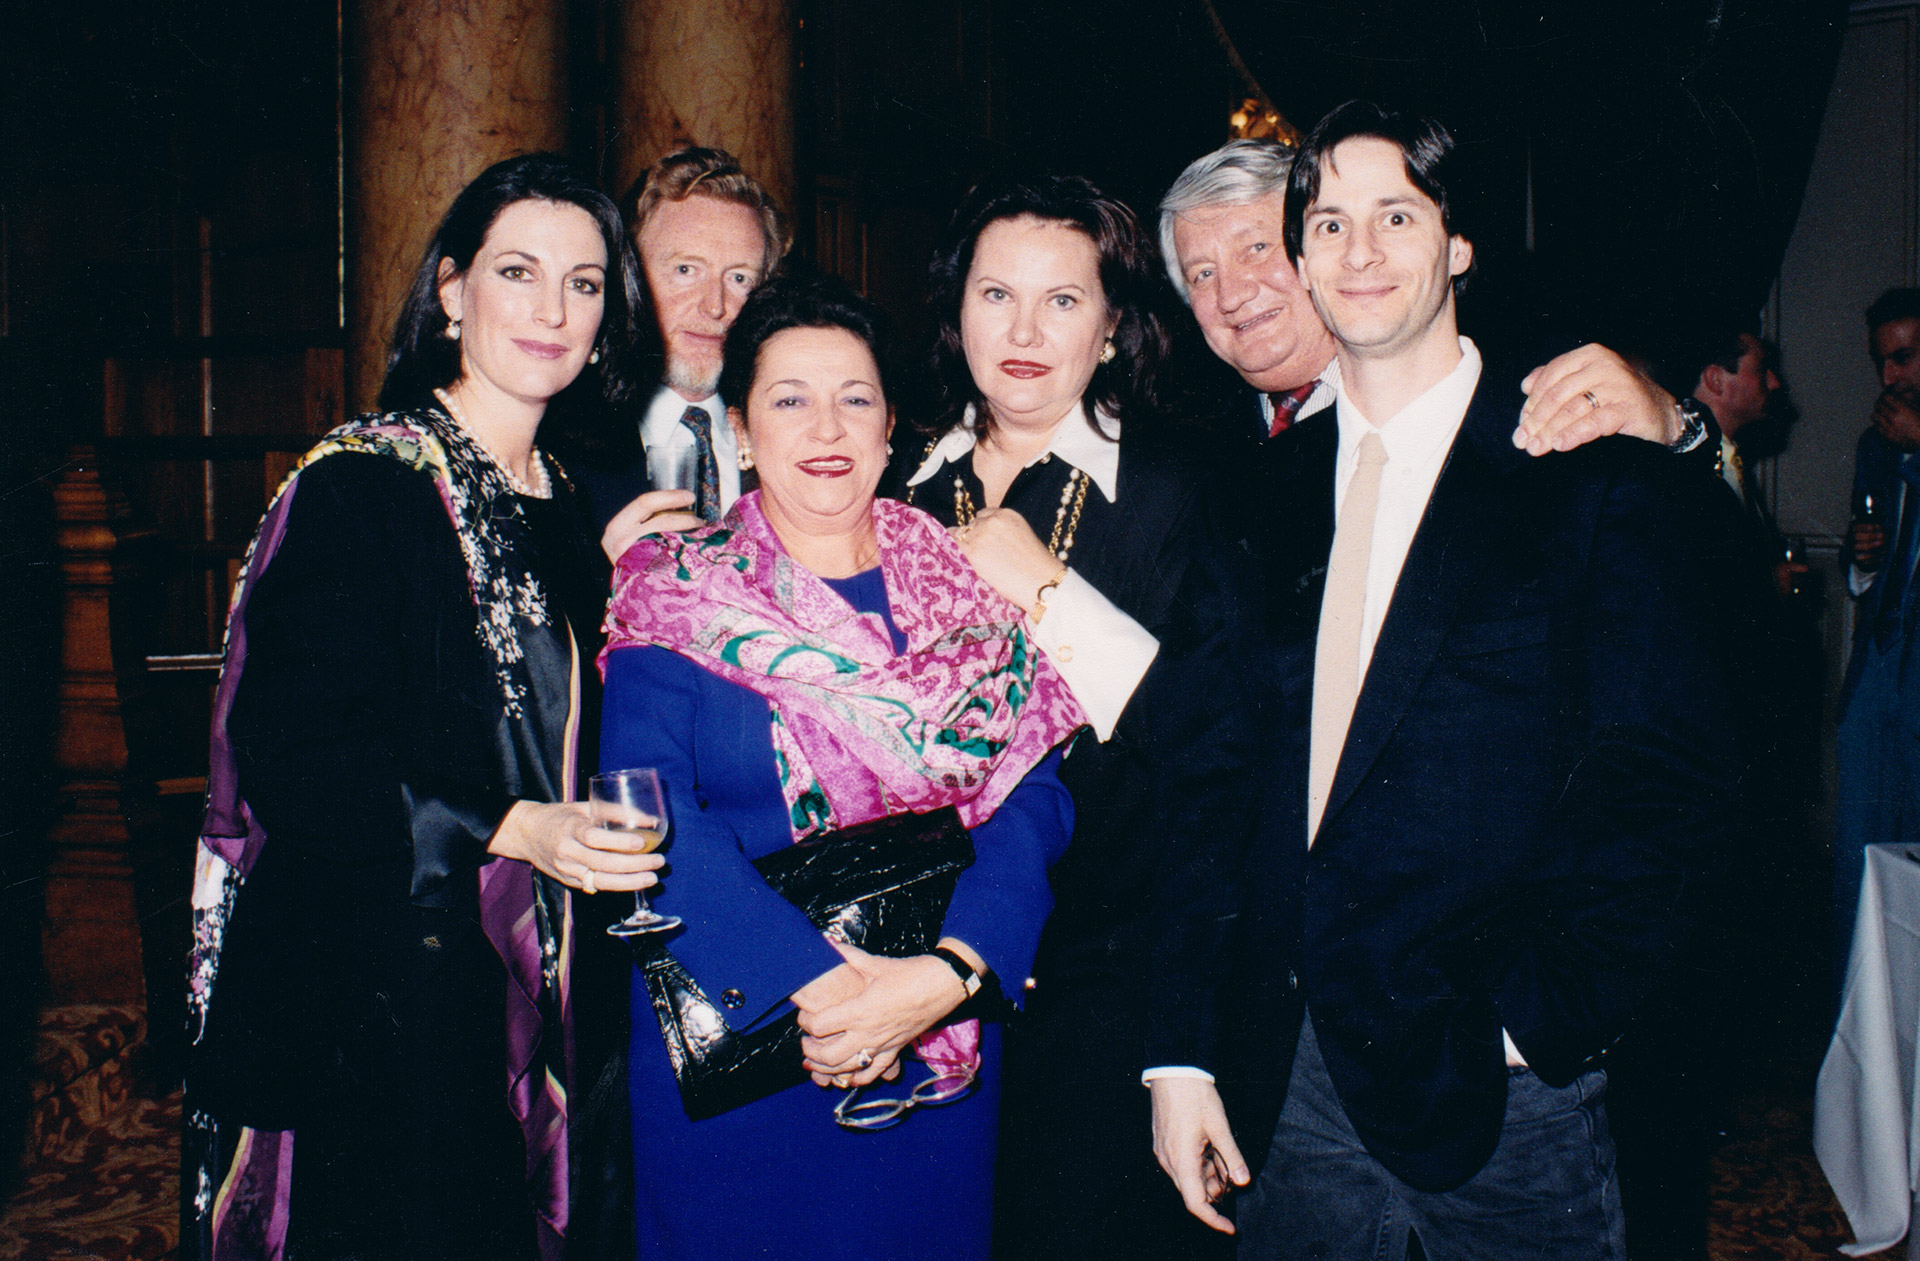 Montecarlo with Ileana Cotrubas, Eva Marton and Maestro Steven Mercurio